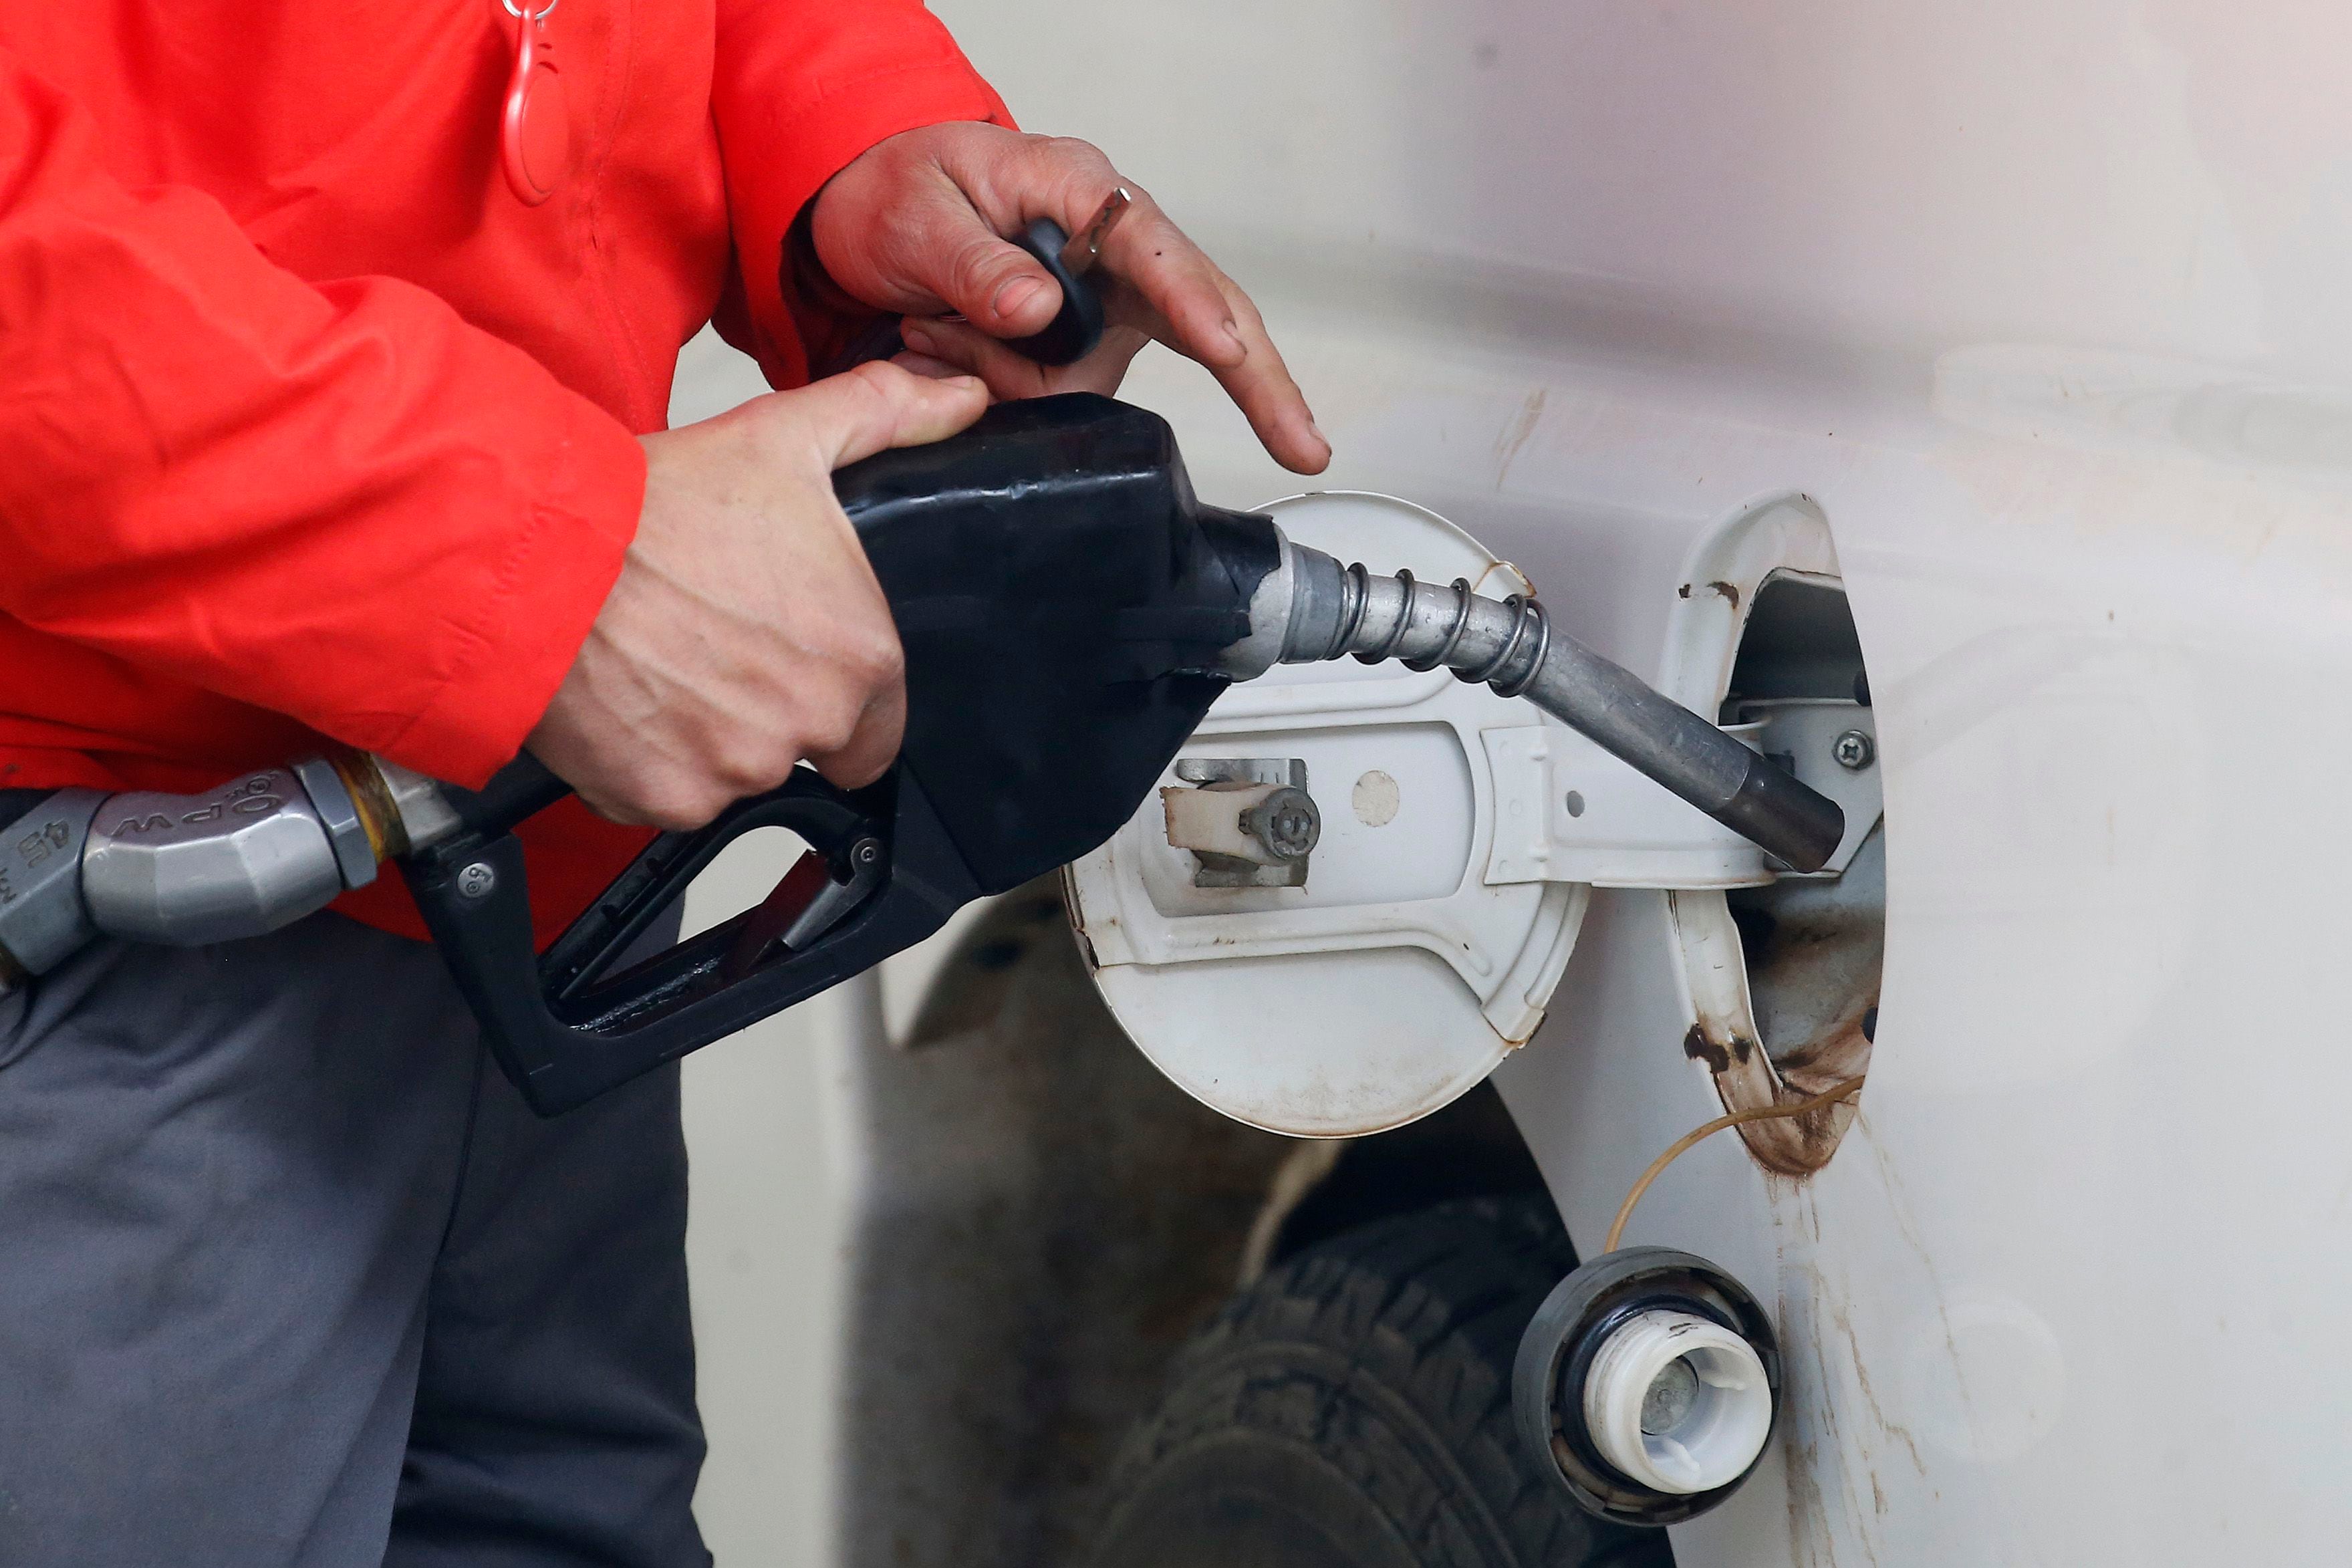 enap informa que bencinas anotarán alza de precio desde este jueves, pero el diésel irá a la baja